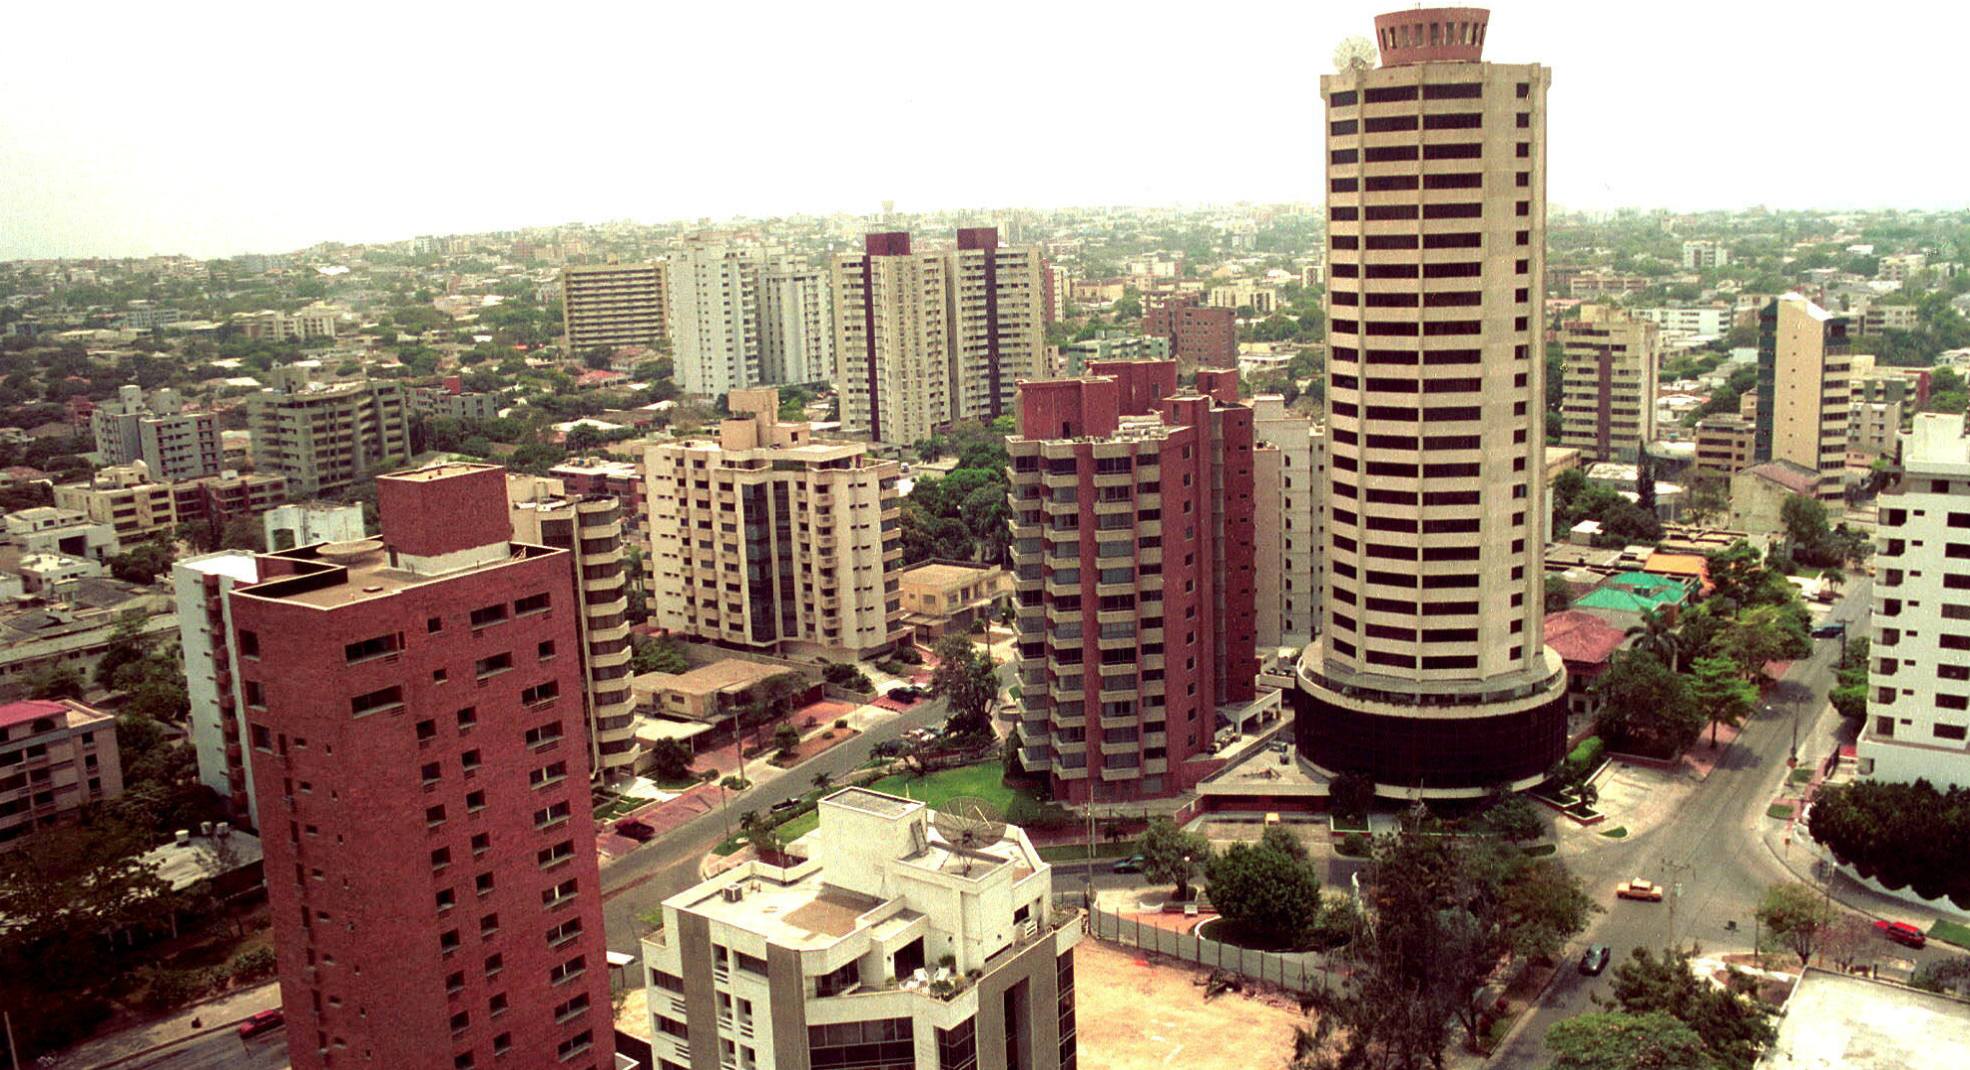 Vista general de la ciudad de Barranquilla. EFE/LUIS RAMIREZ